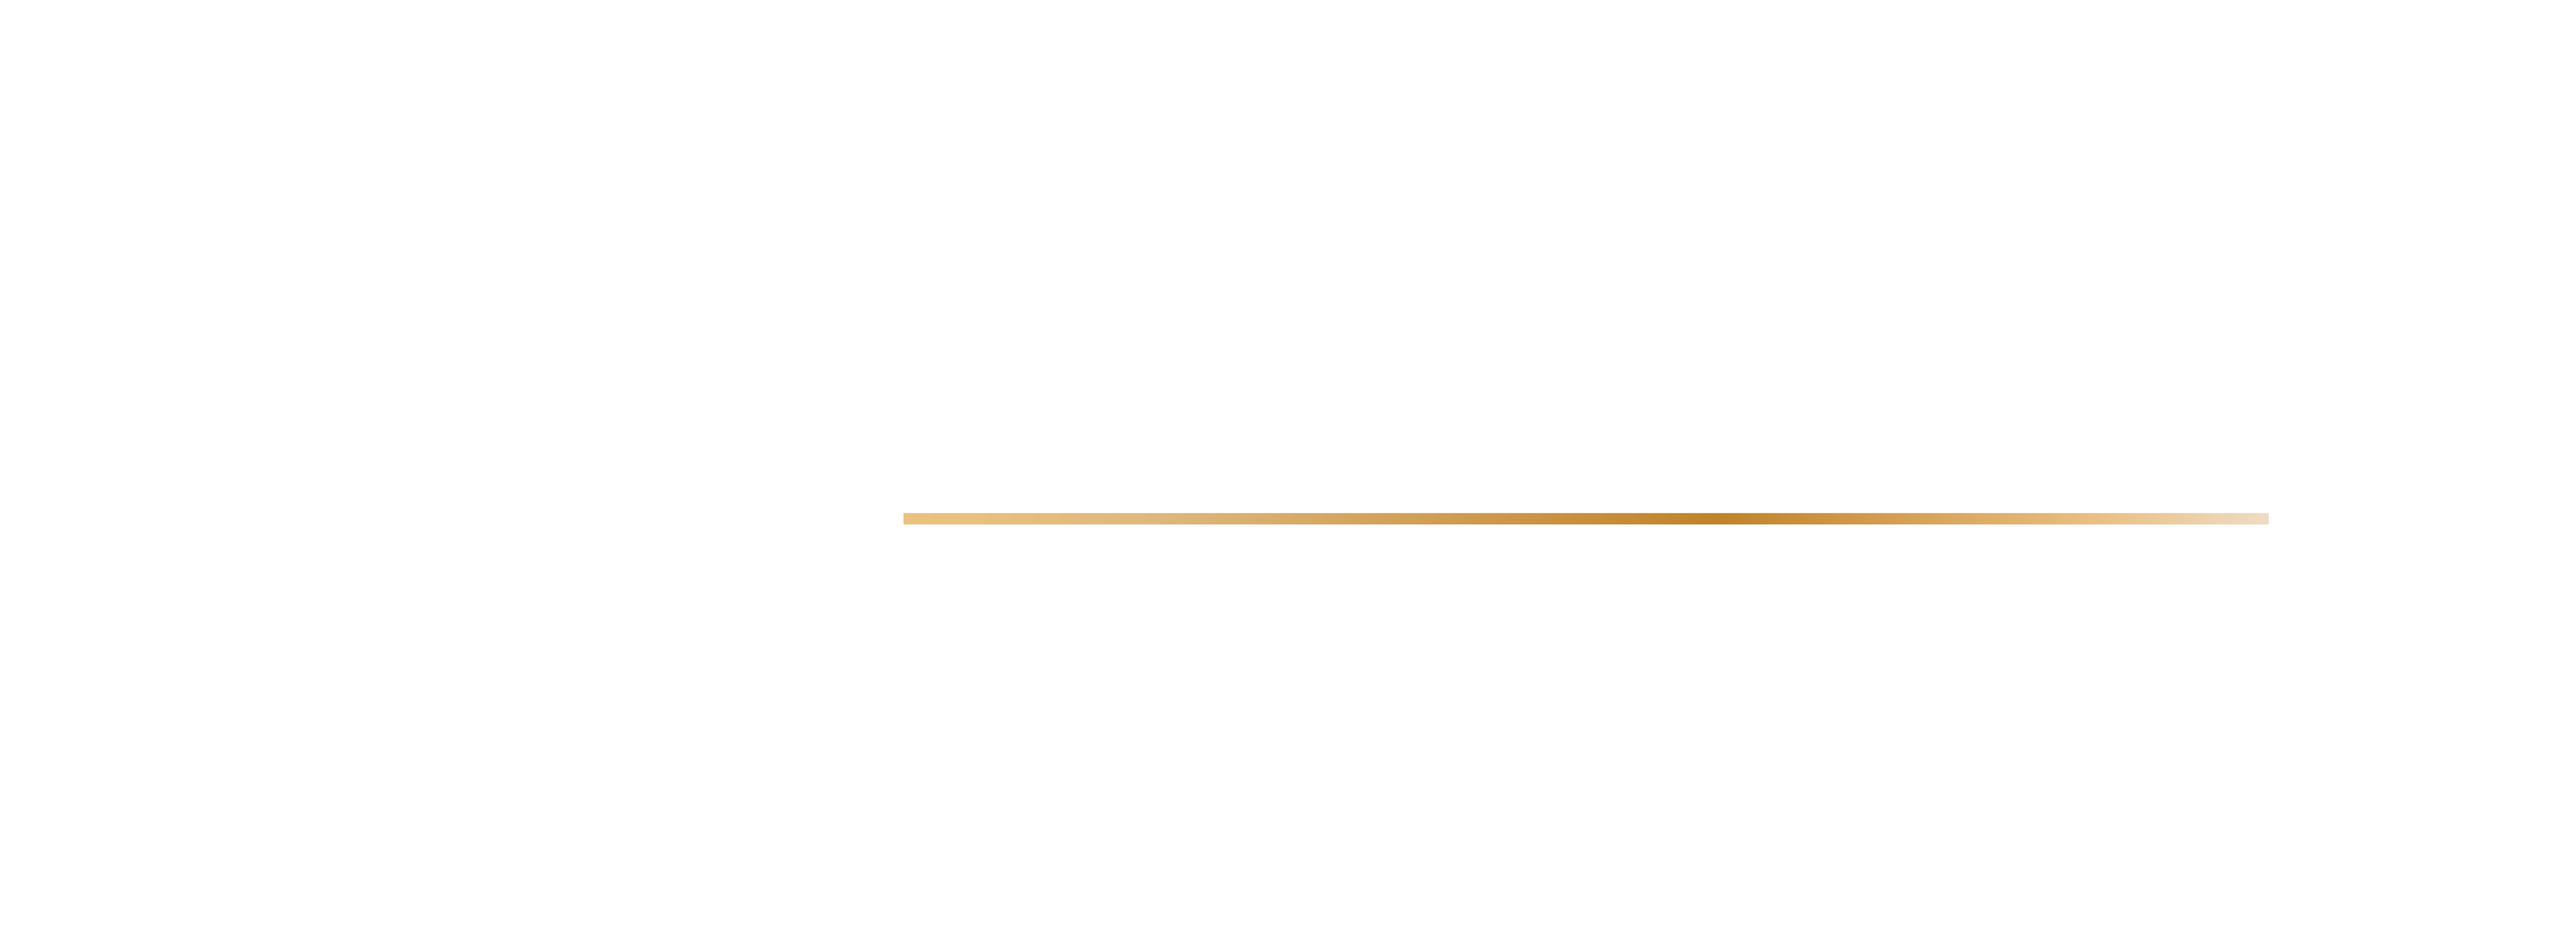 Vanguard Renovations logo